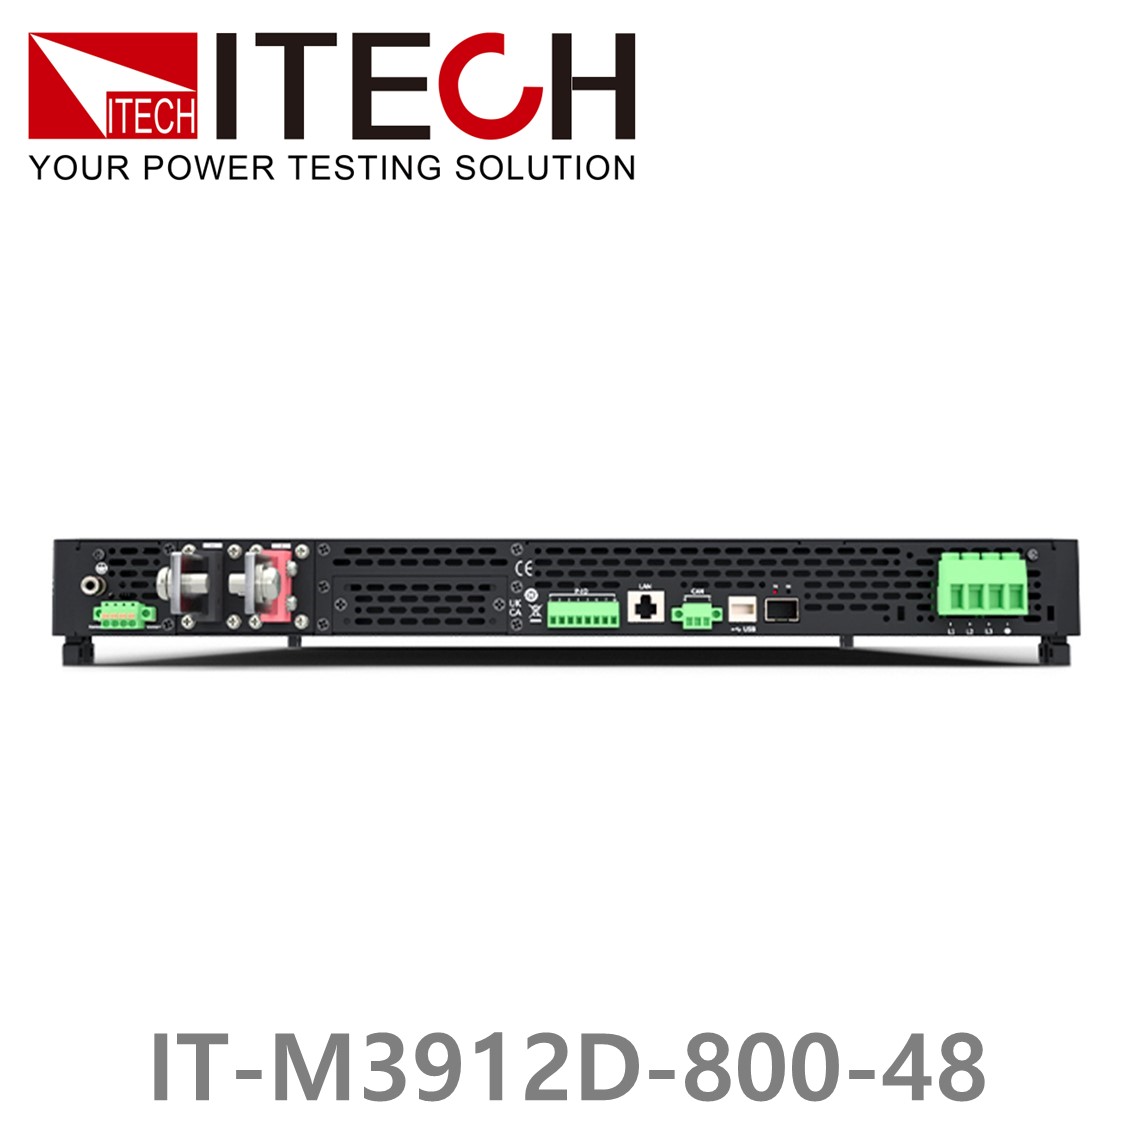 [ ITECH ] IT-M3912D-800-48 양방향 프로그래머블 DC전원공급기, DC파워서플라이